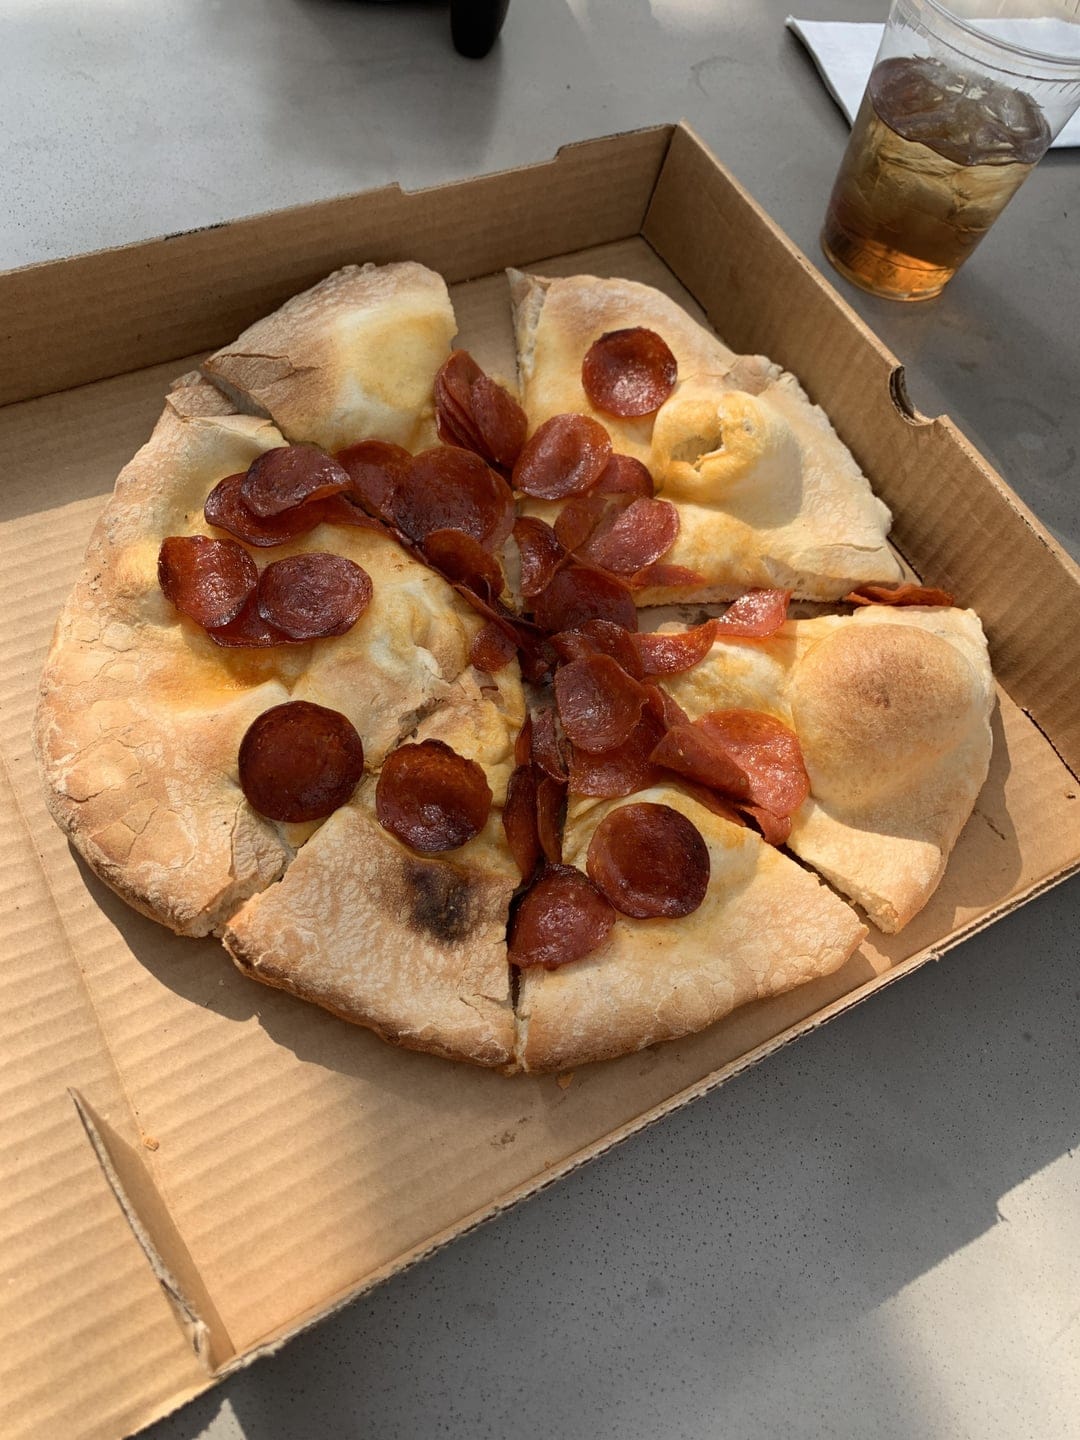 Так по мнению повара должна выглядеть пицца пеперони